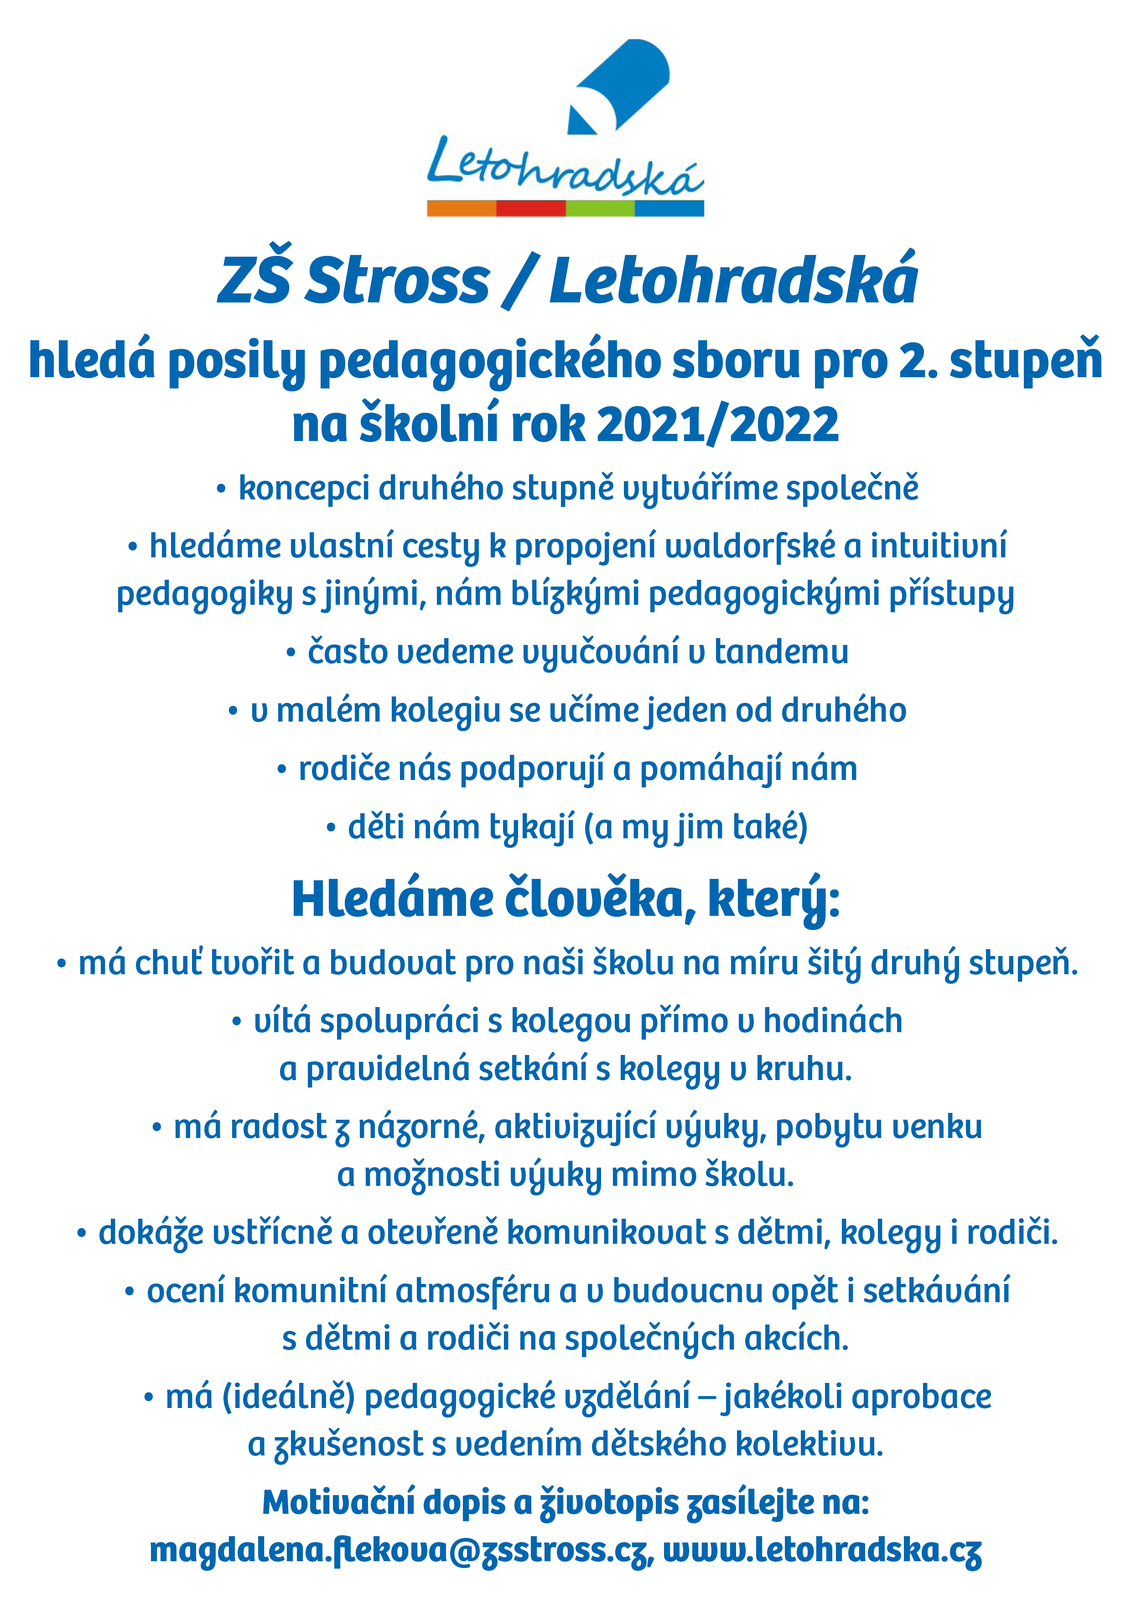 ZS_Letohradska_inzerat_2021_2.jpg